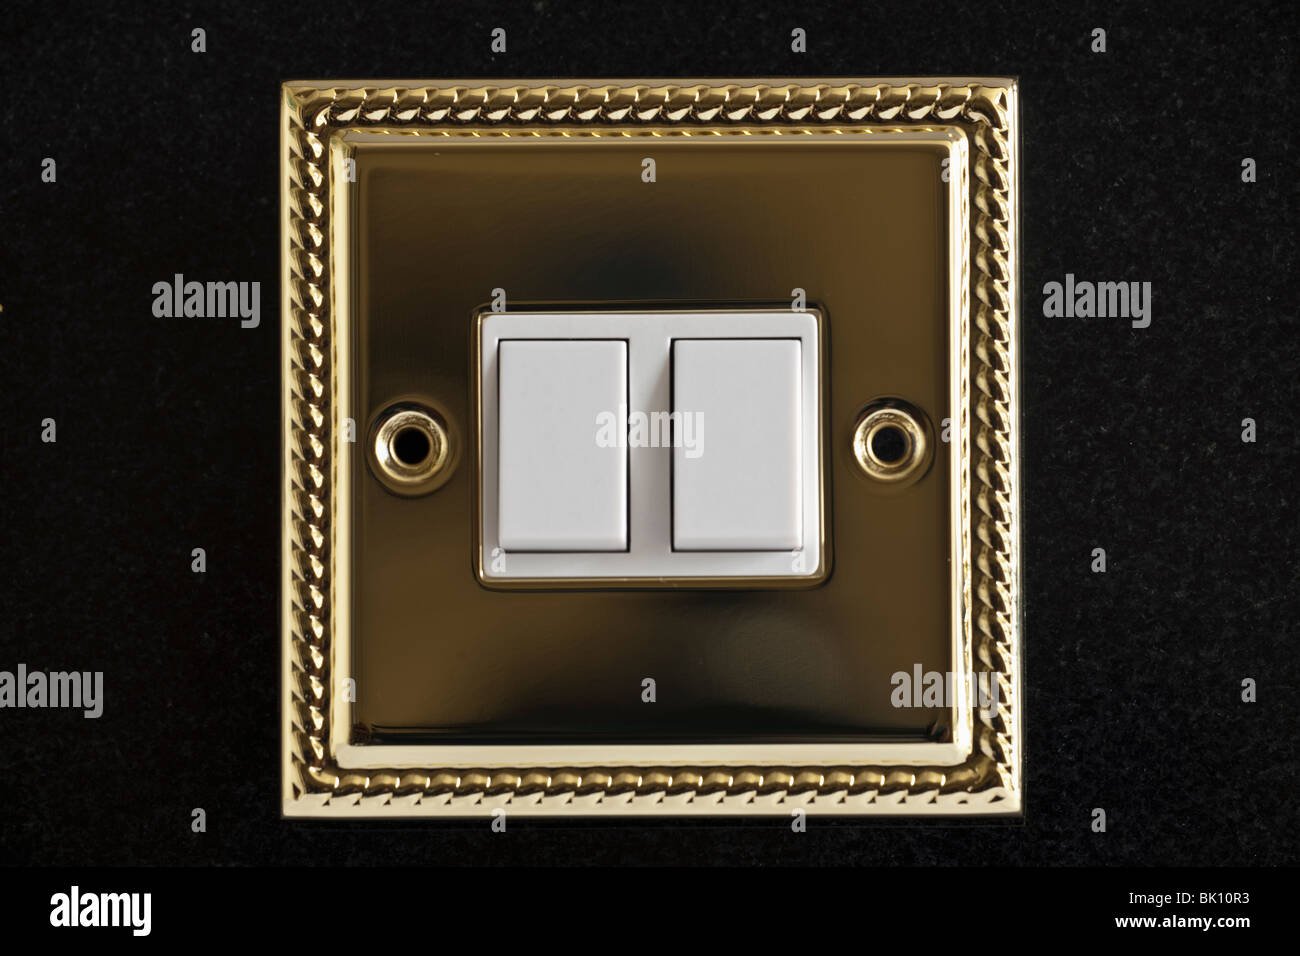 Plaqué or double interrupteur d'éclairage électrique Banque D'Images